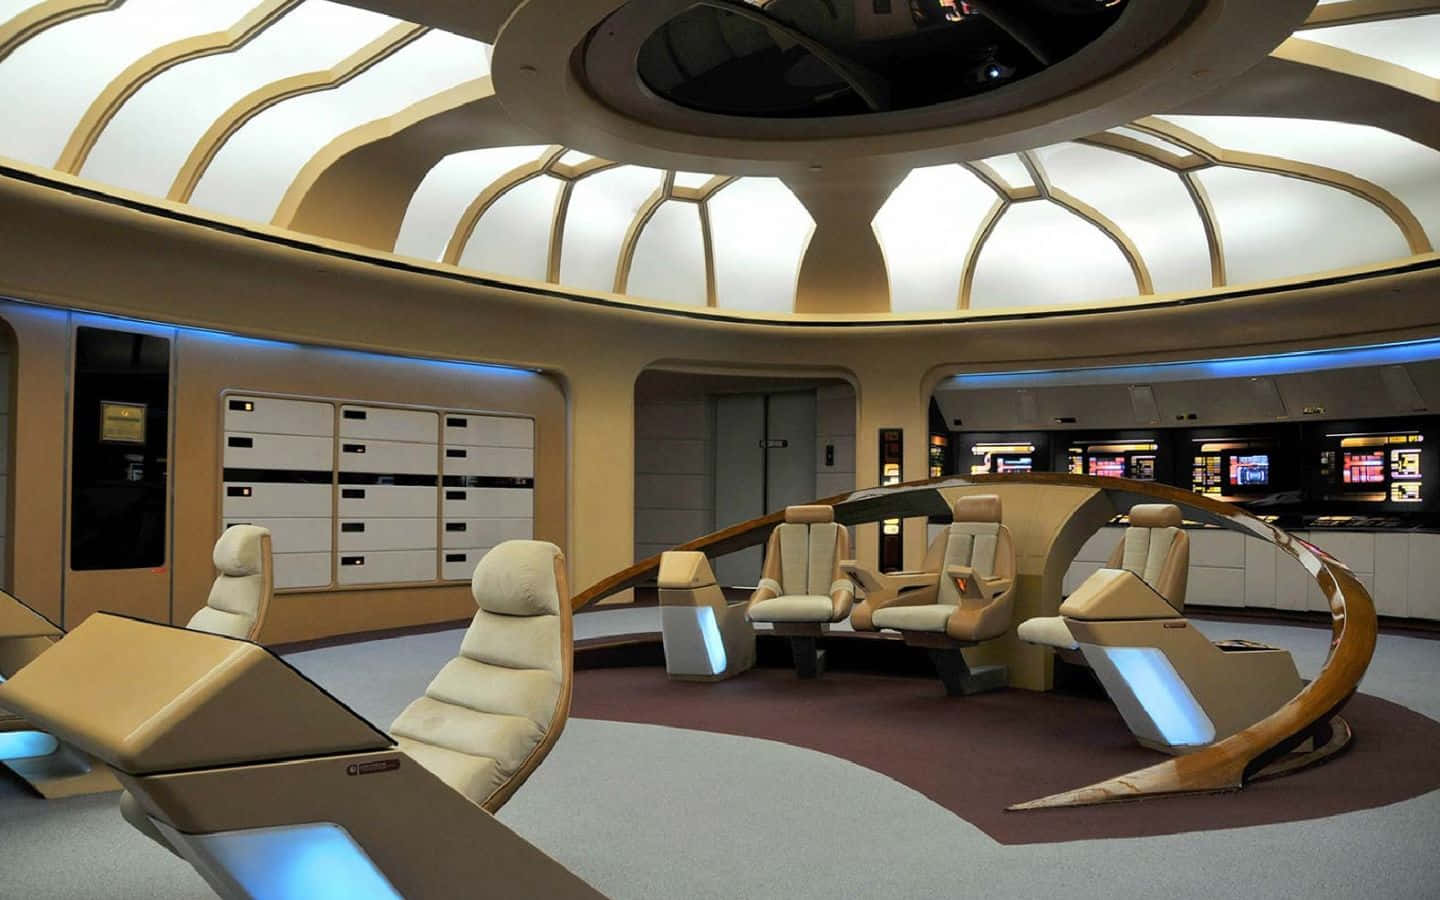 Star Trek Enterprise Bridge Wallpaper